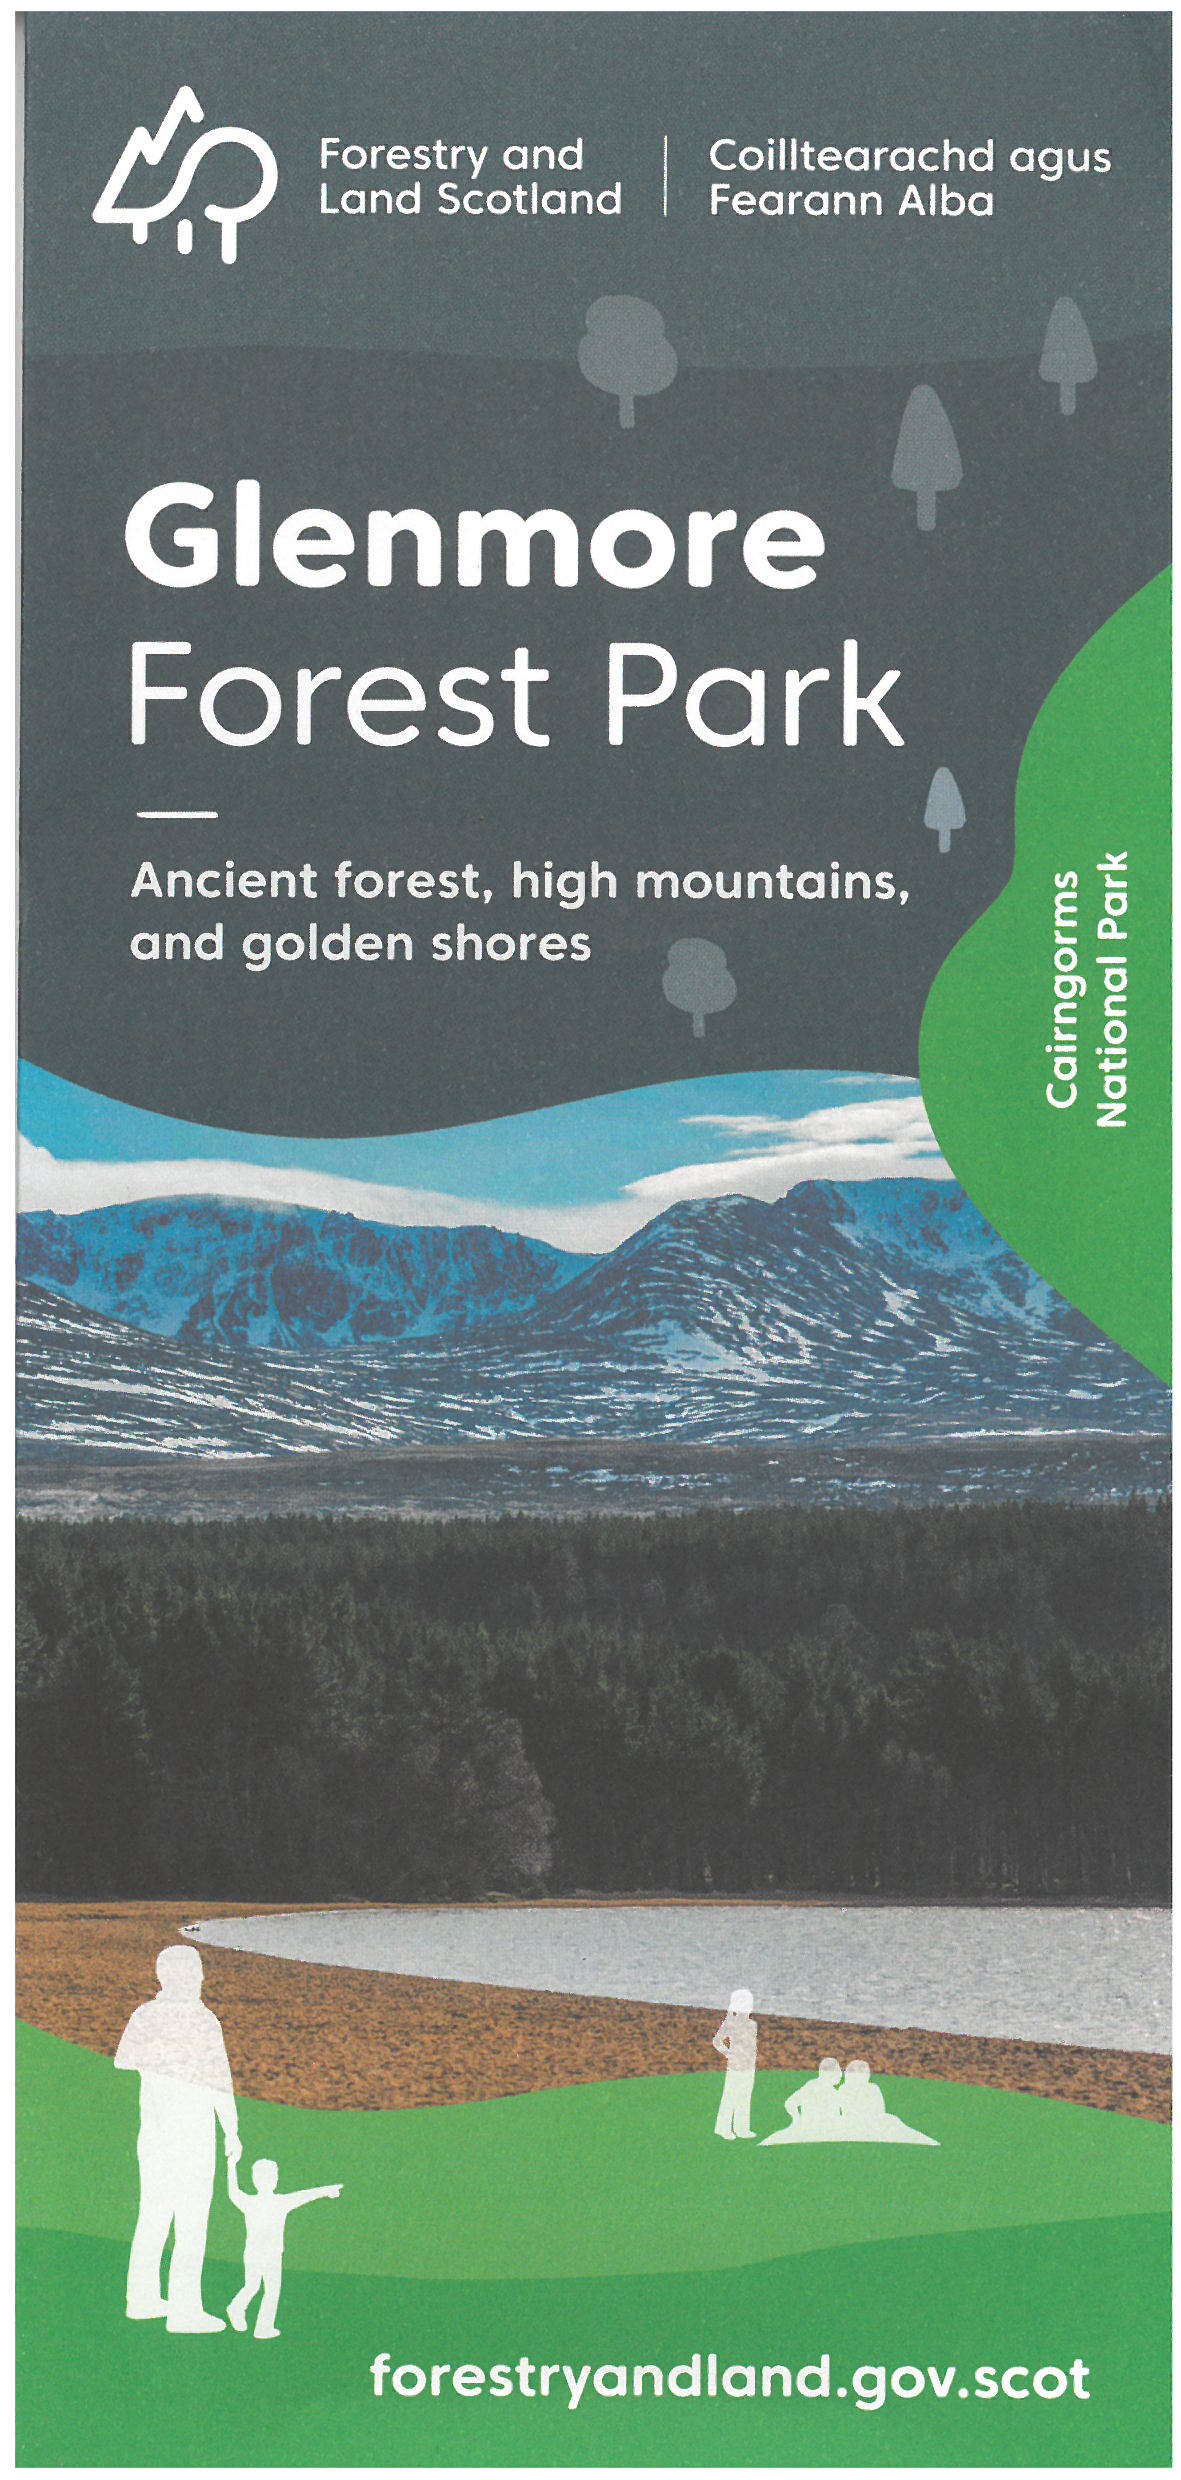 Glenmore Forest Park brochure full size